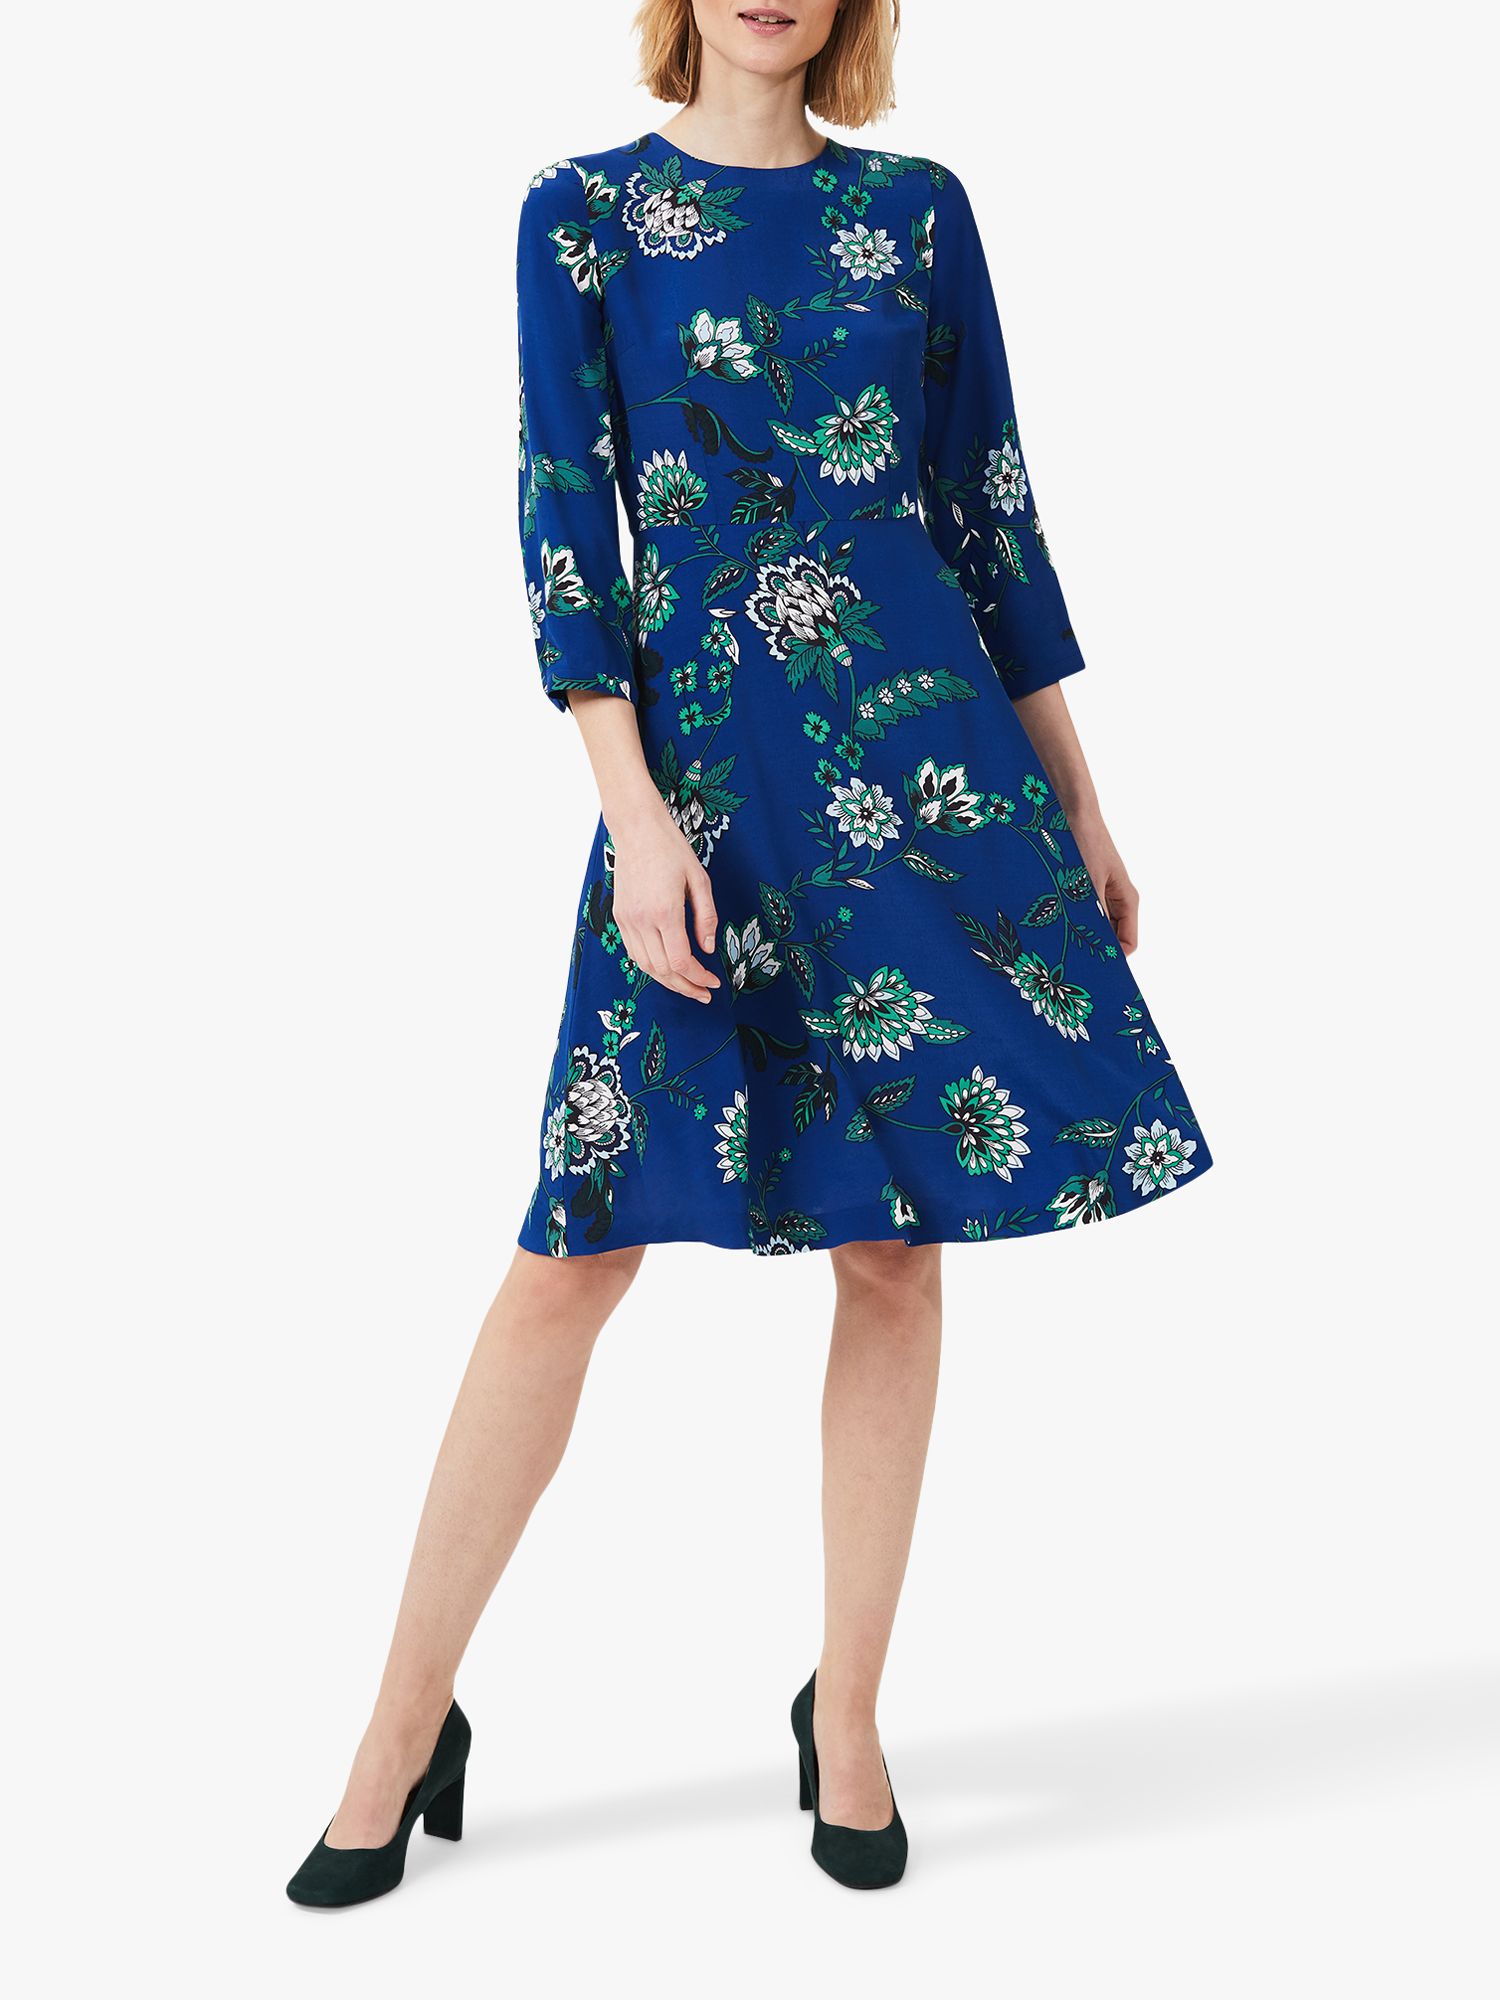 Hobbs Marietta Floral Dress, Azure/Apple Green, 10